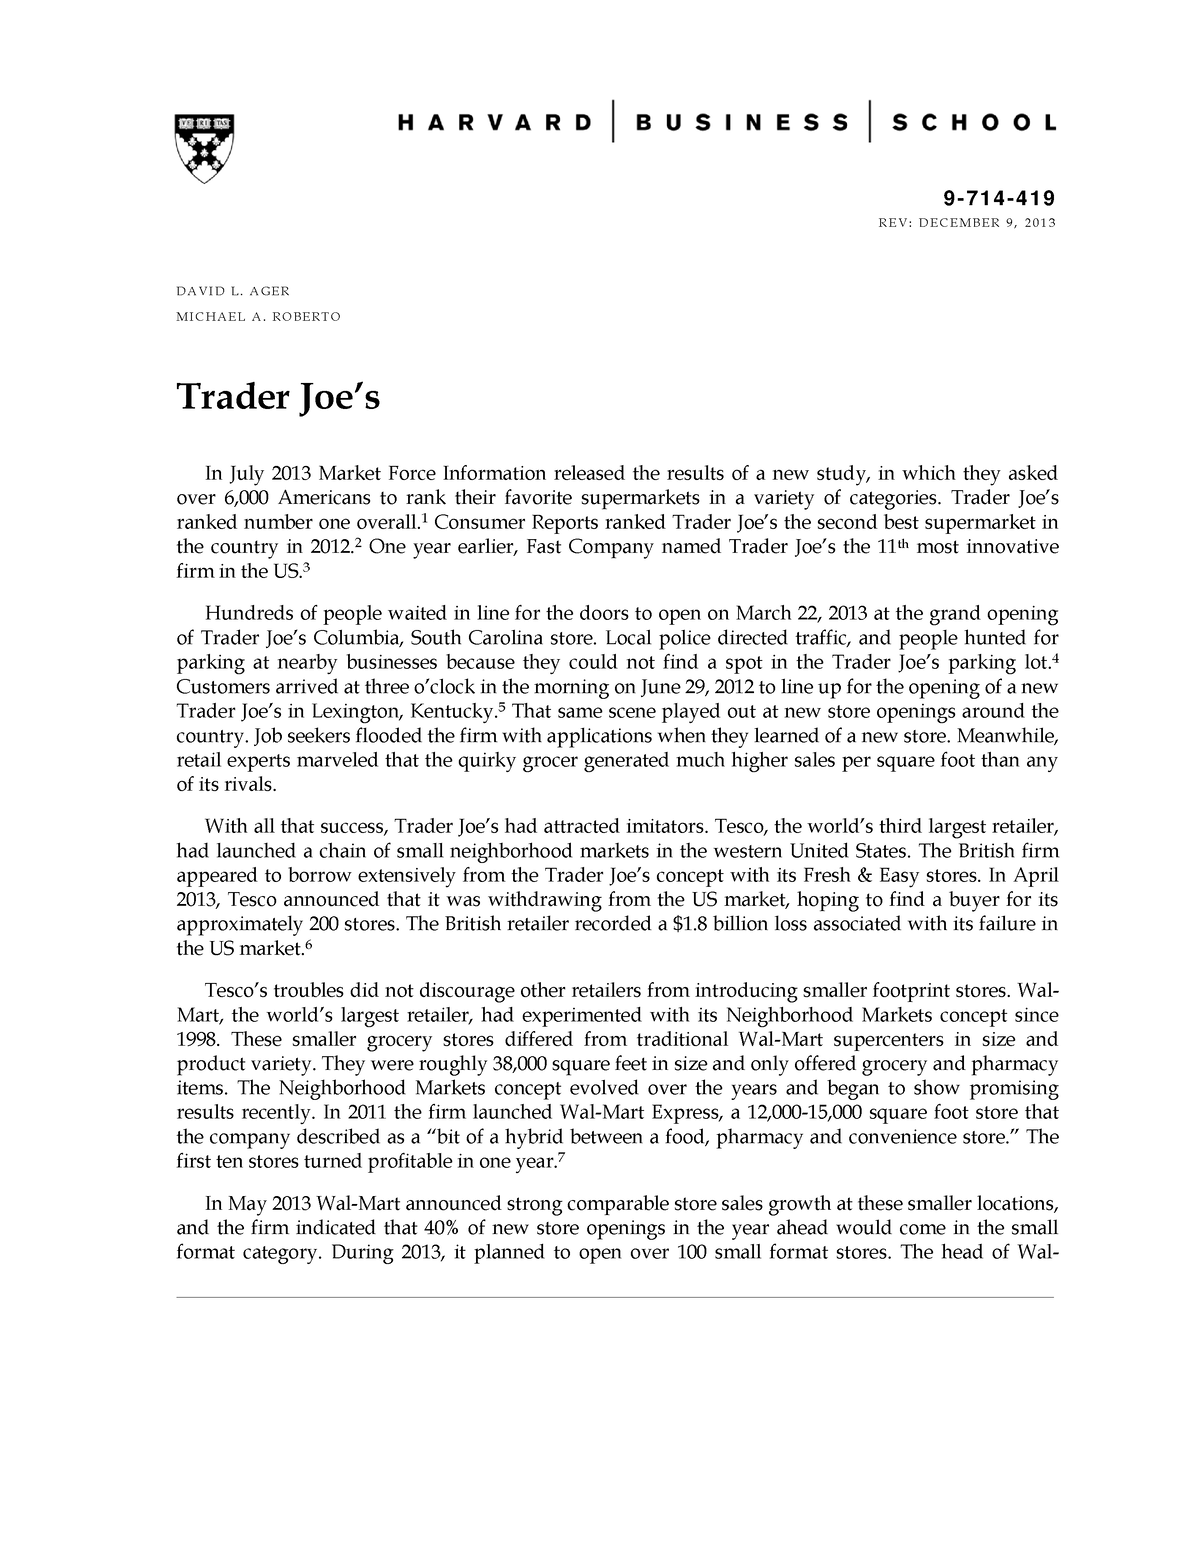 trader joe's harvard case study